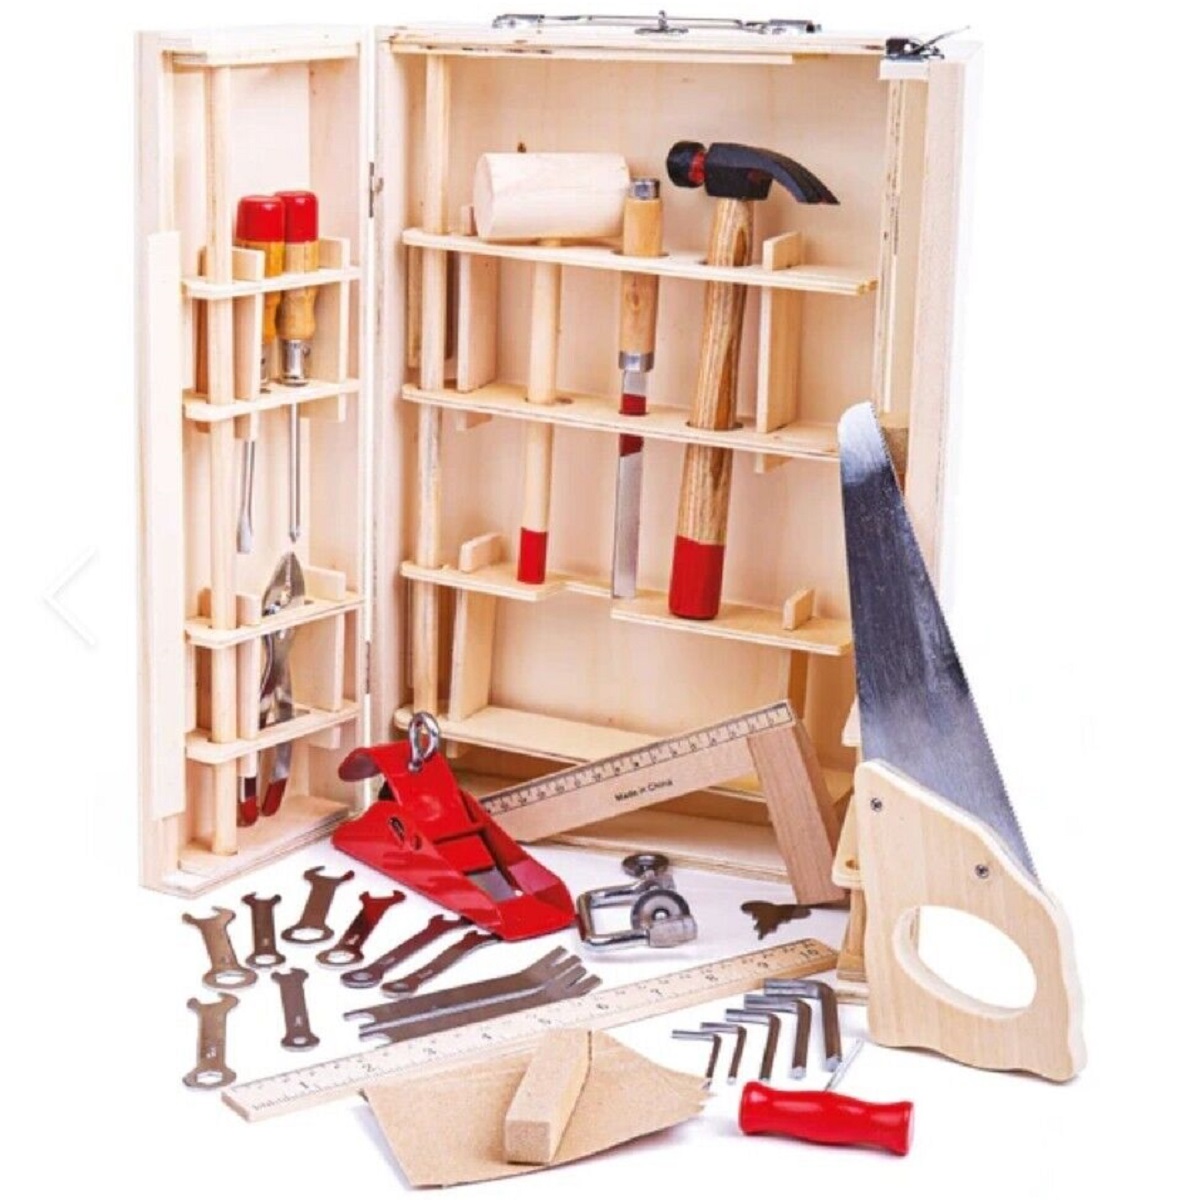 Junior woodworking tools uk